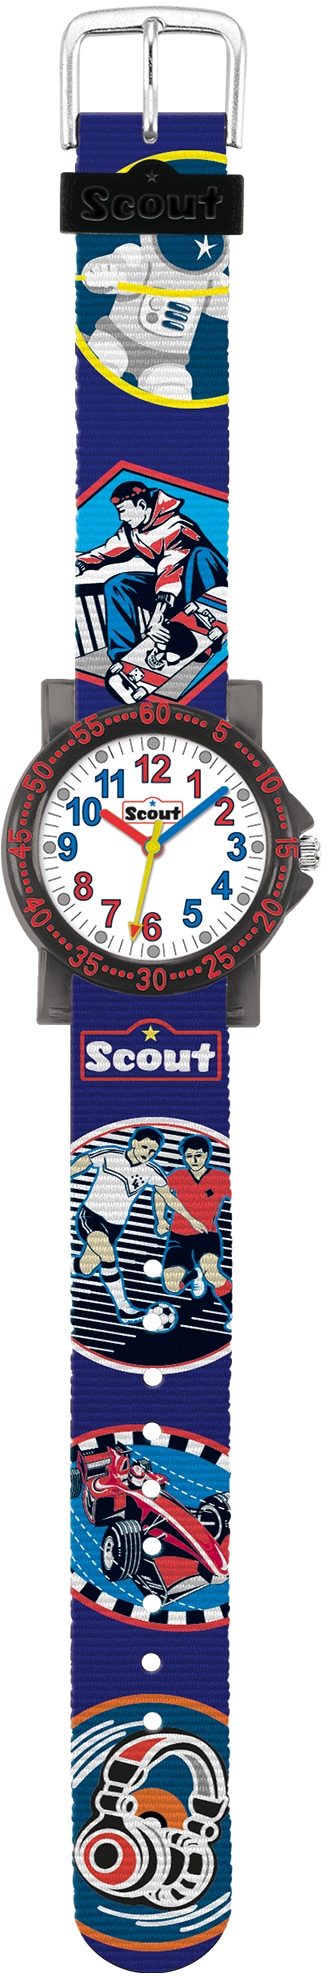 Scout online »The 280375018« kaufen IT-Collection, Quarzuhr